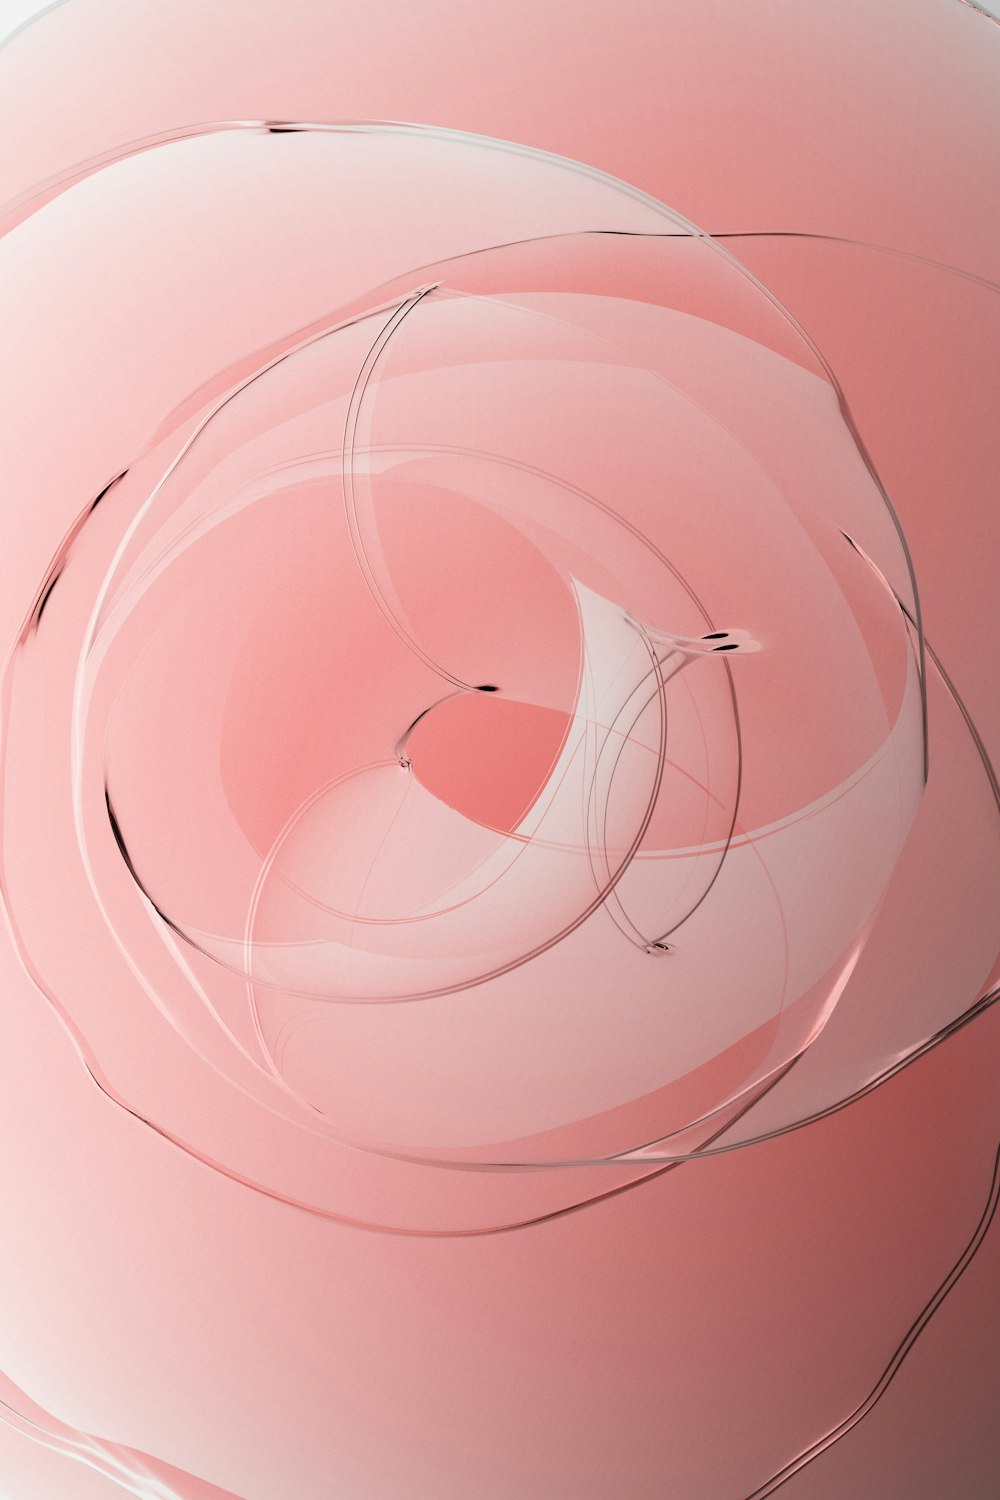 Image générée par ordinateur d’un objet circulaire